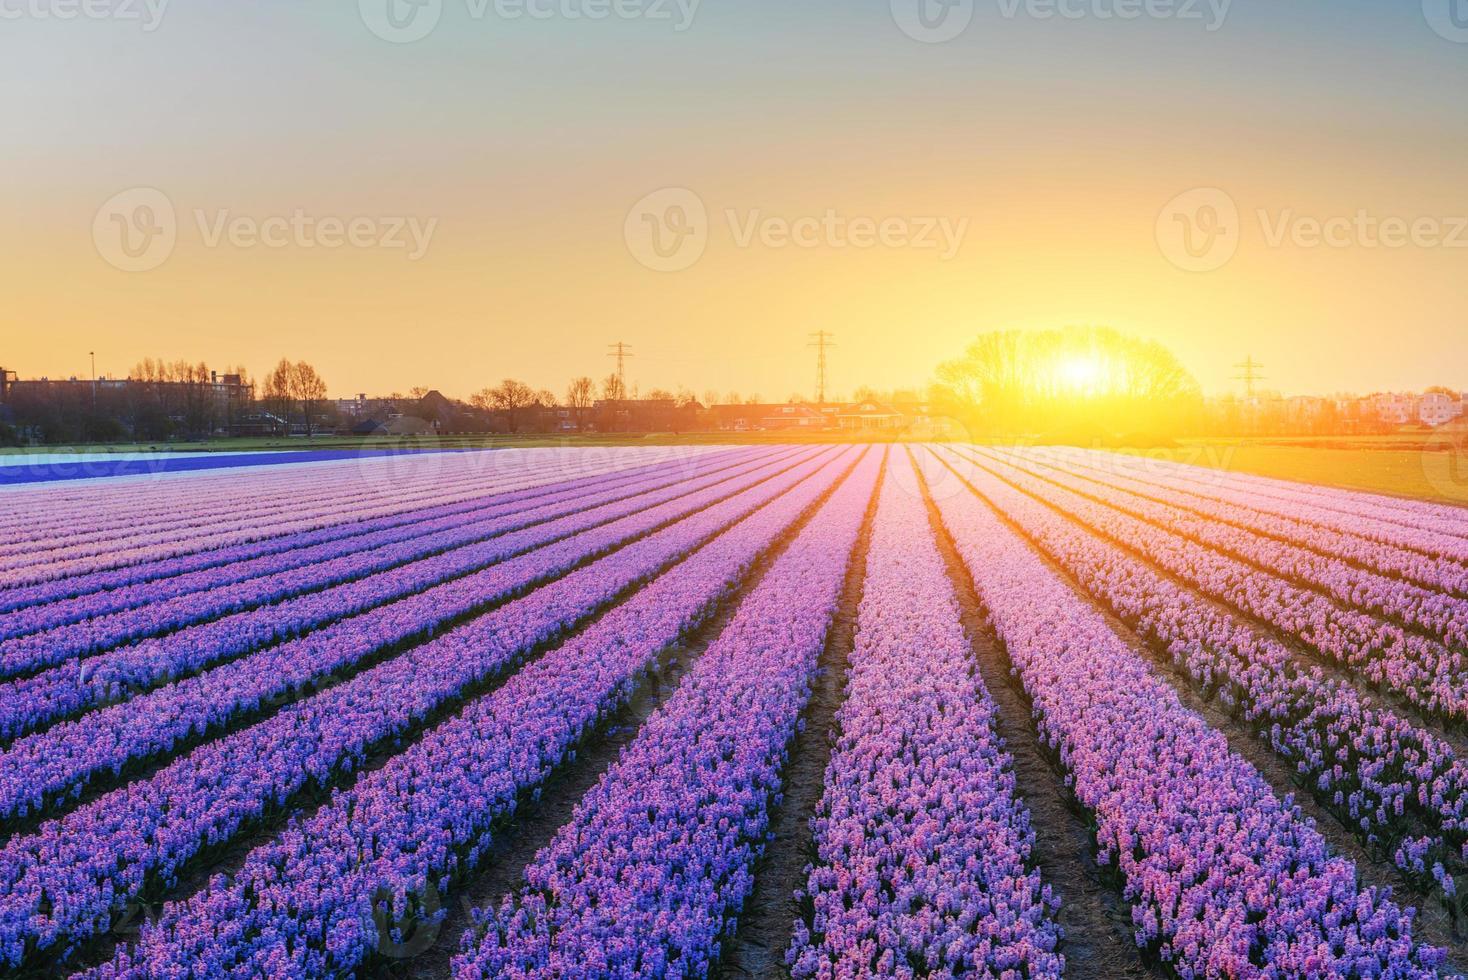 champs de jacinthes fleurs épanouies sur le coucher de soleil fantastique. beauté photo